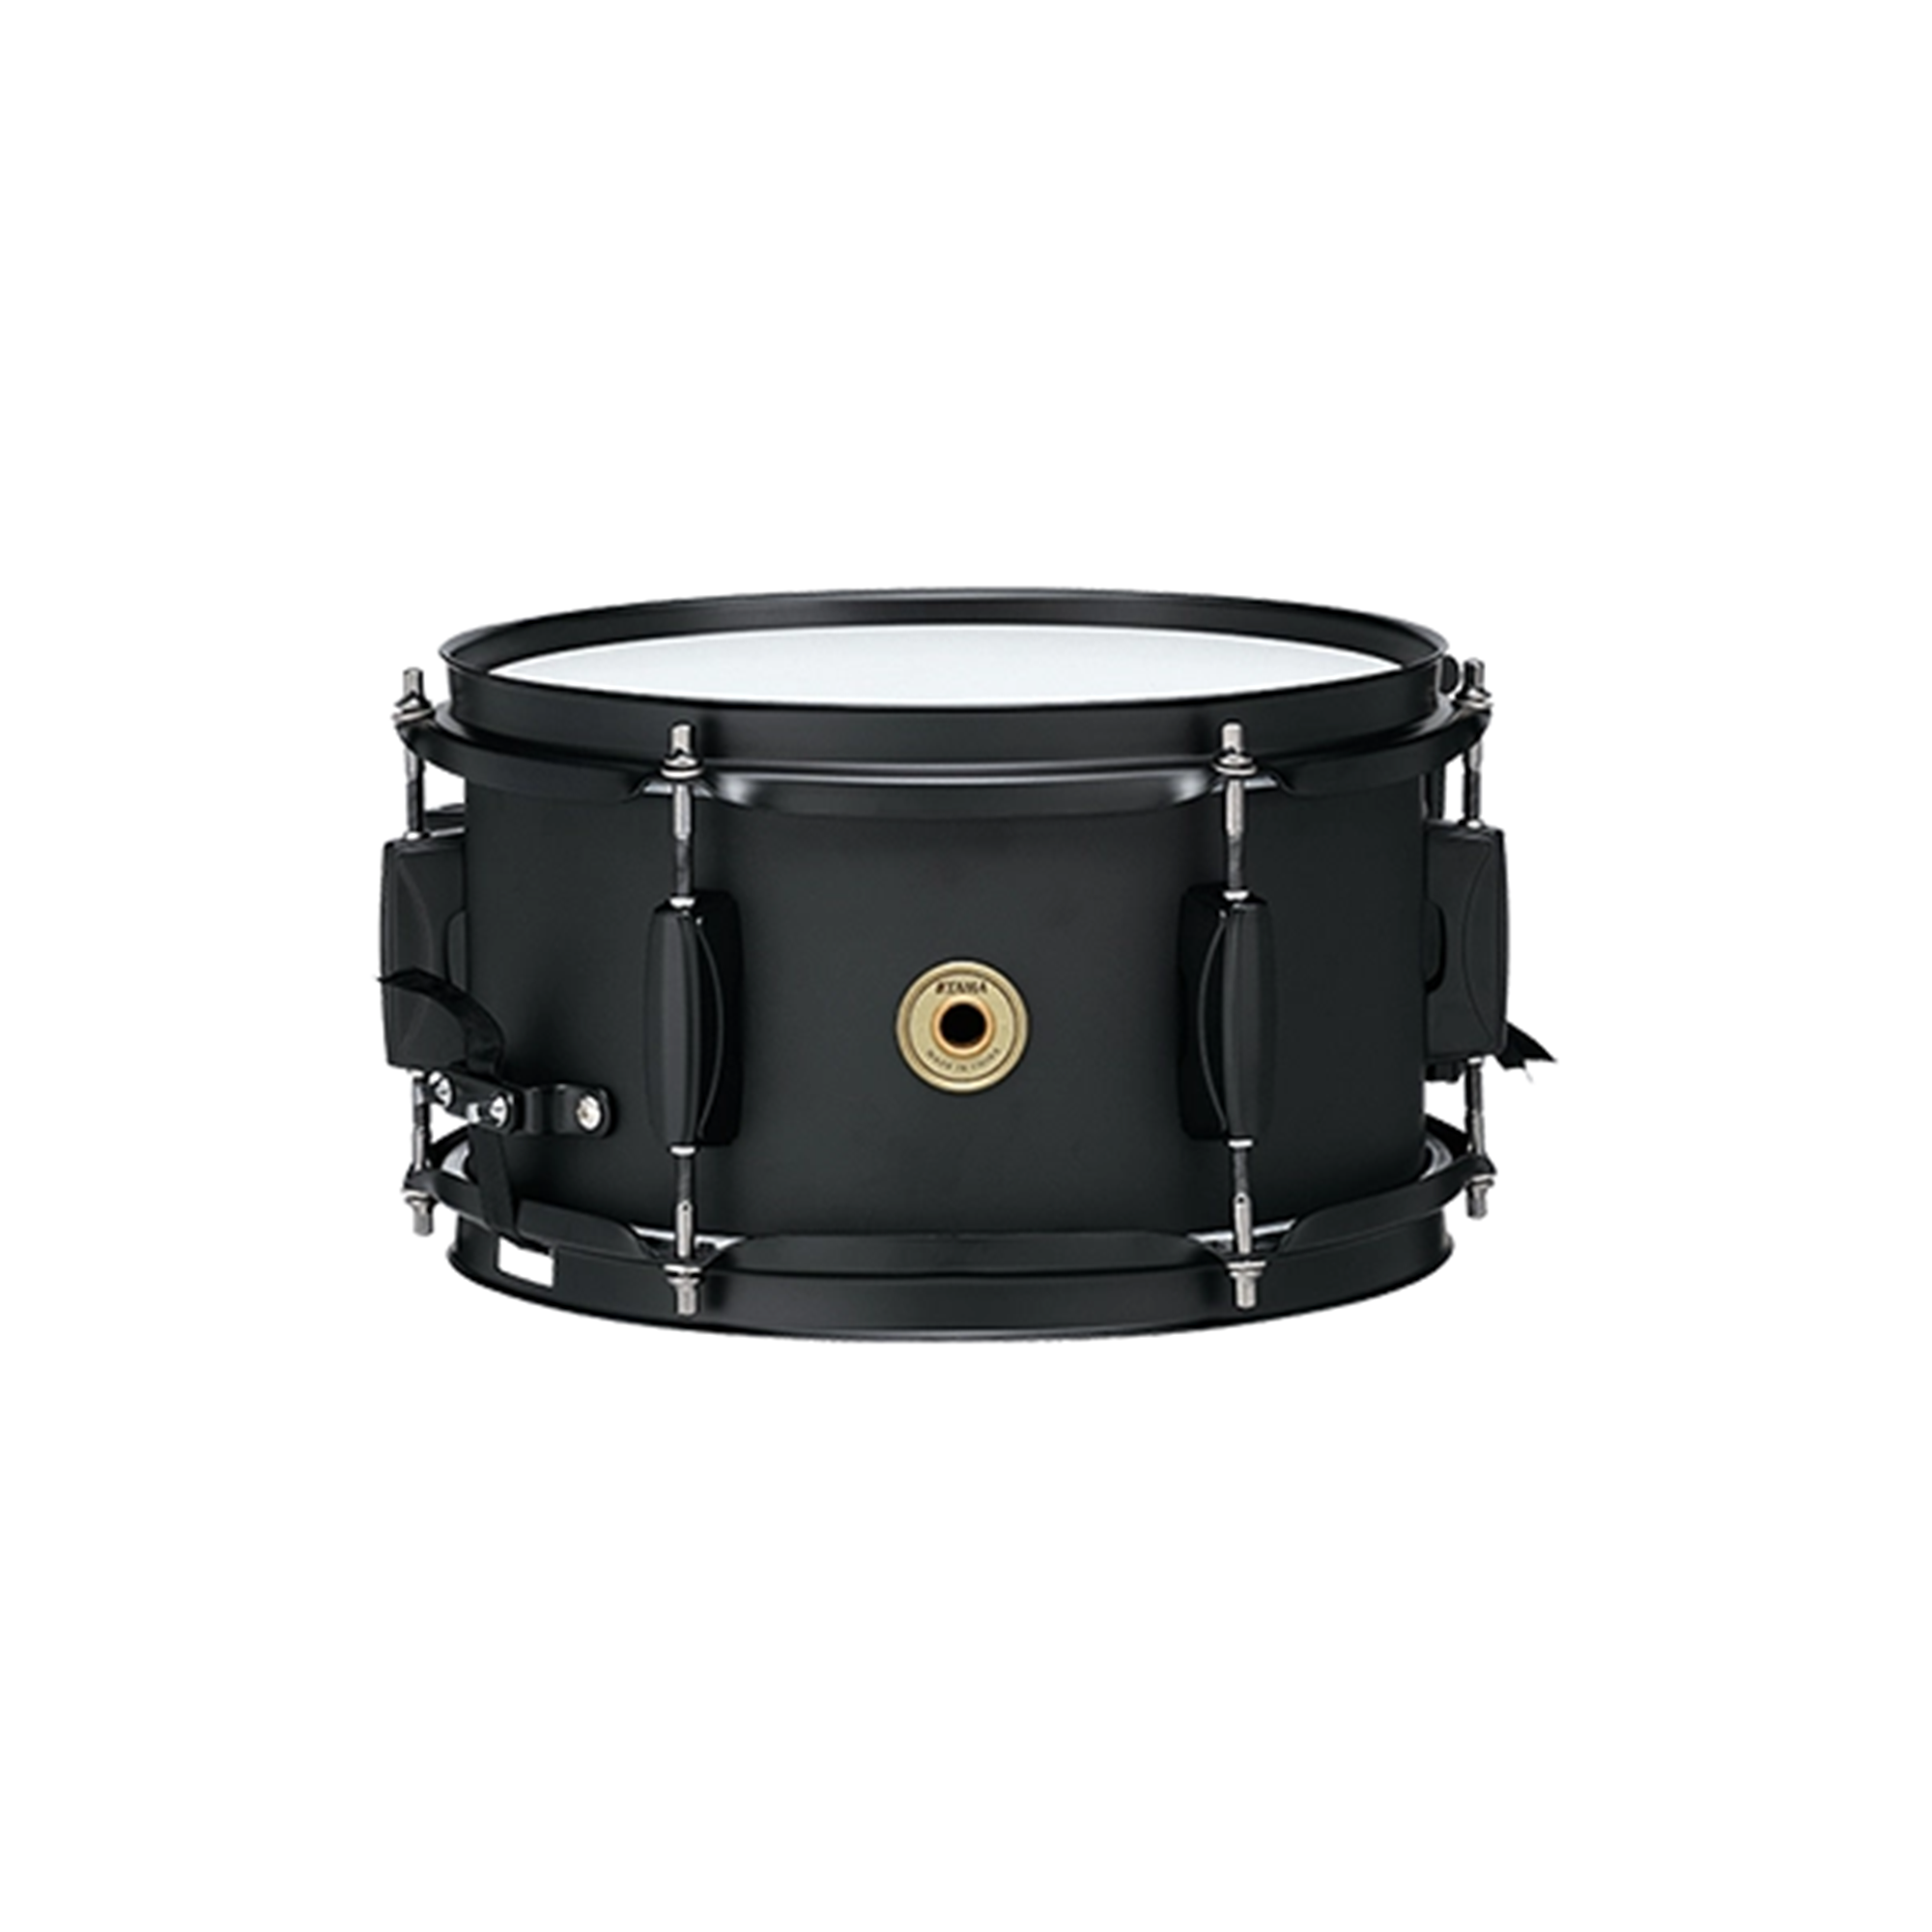 TAMA BST1055MBK 10"x5.5" Metalworks Steel Snare Drum (Black)